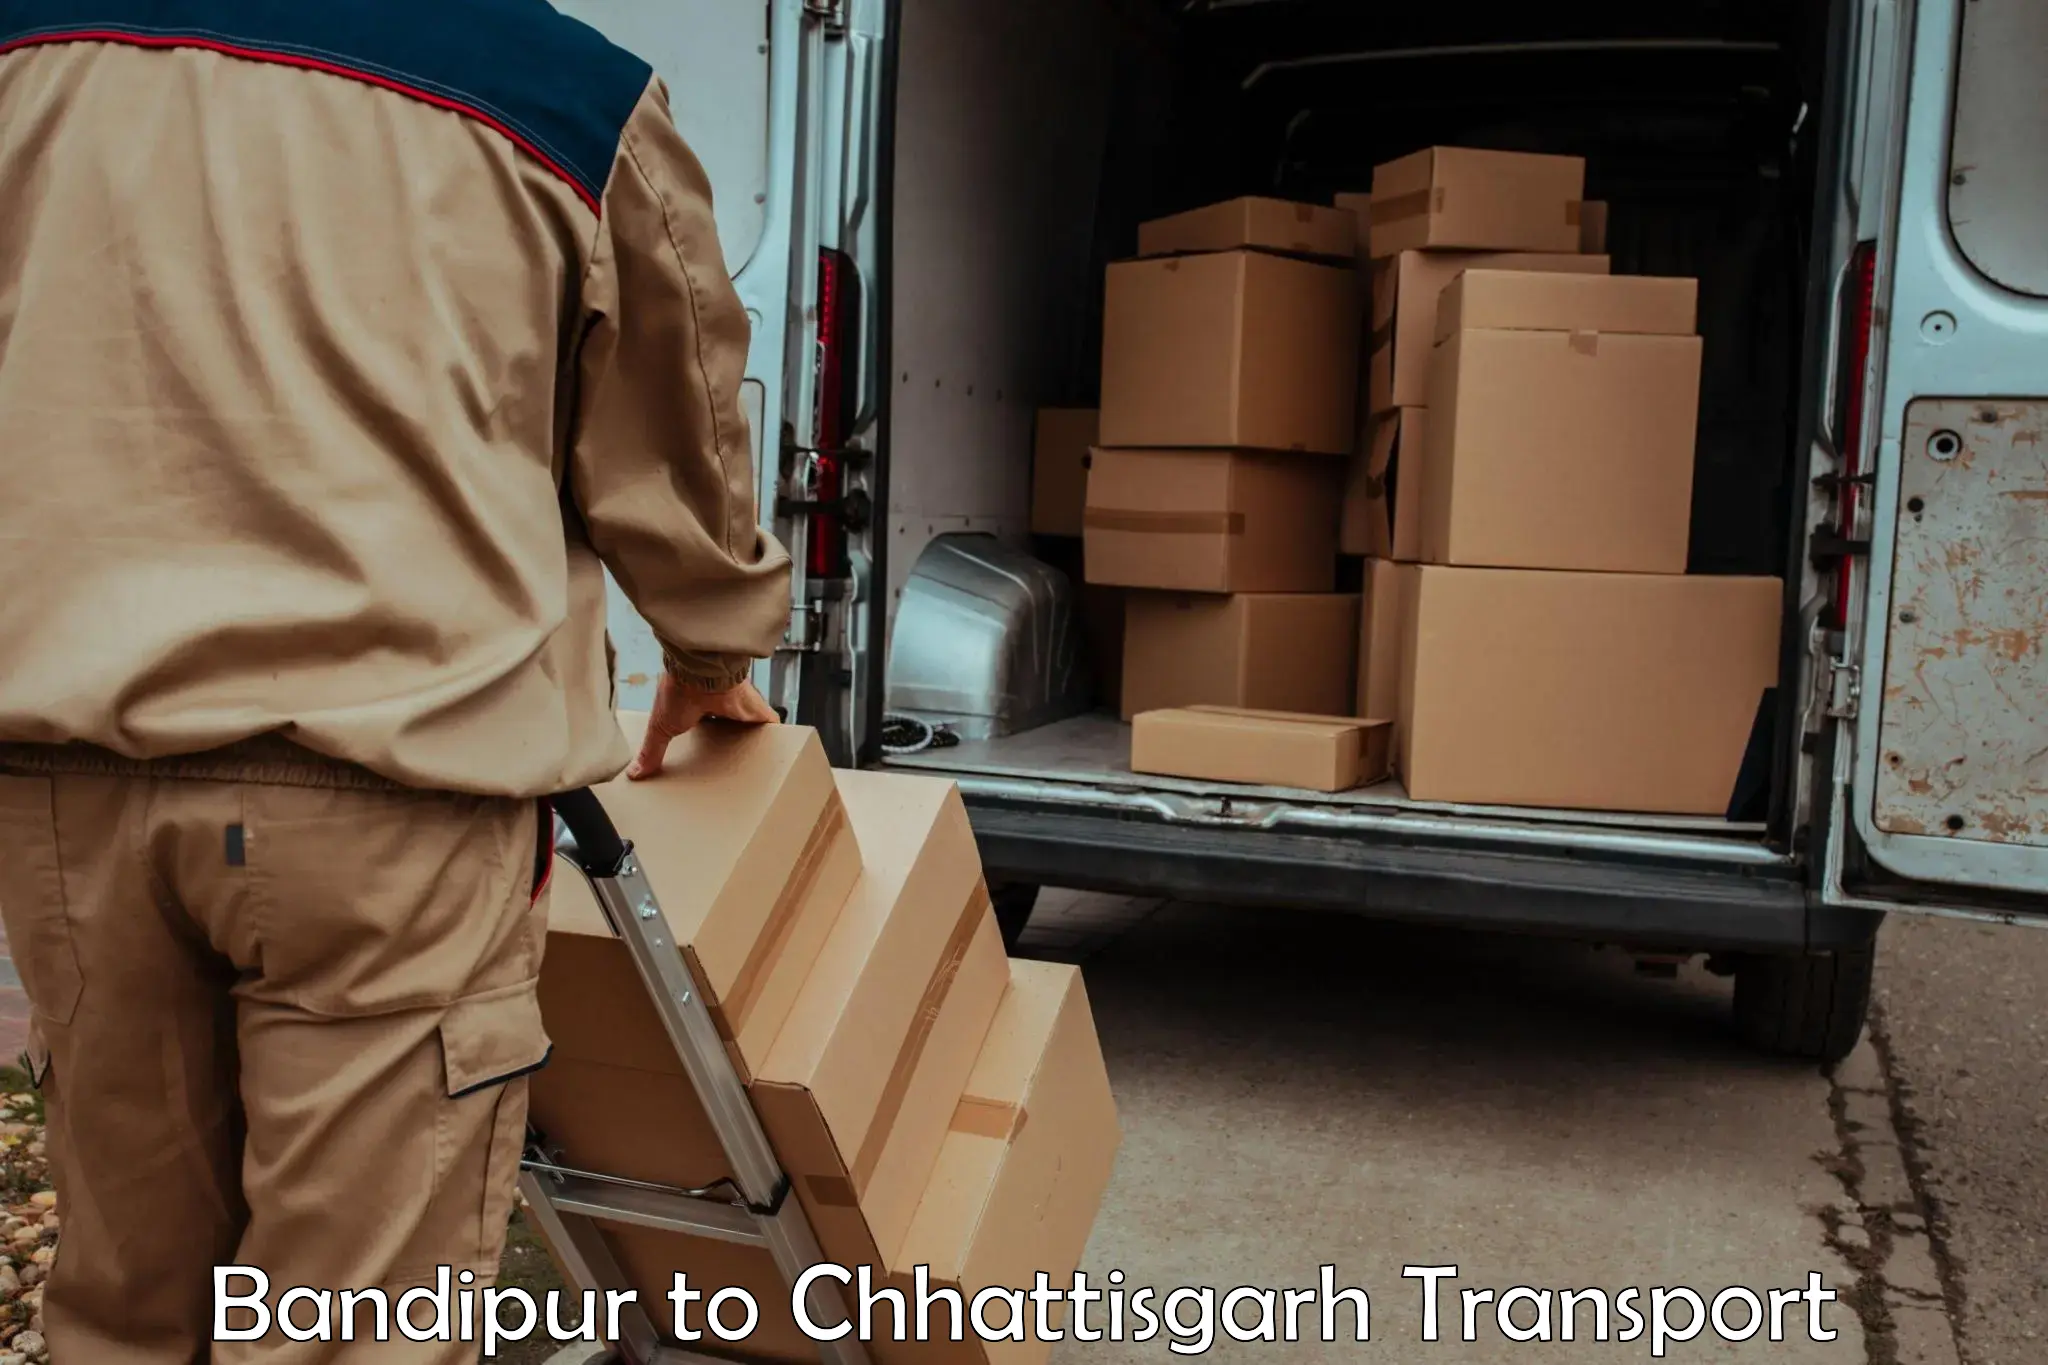 Pick up transport service in Bandipur to Bemetara